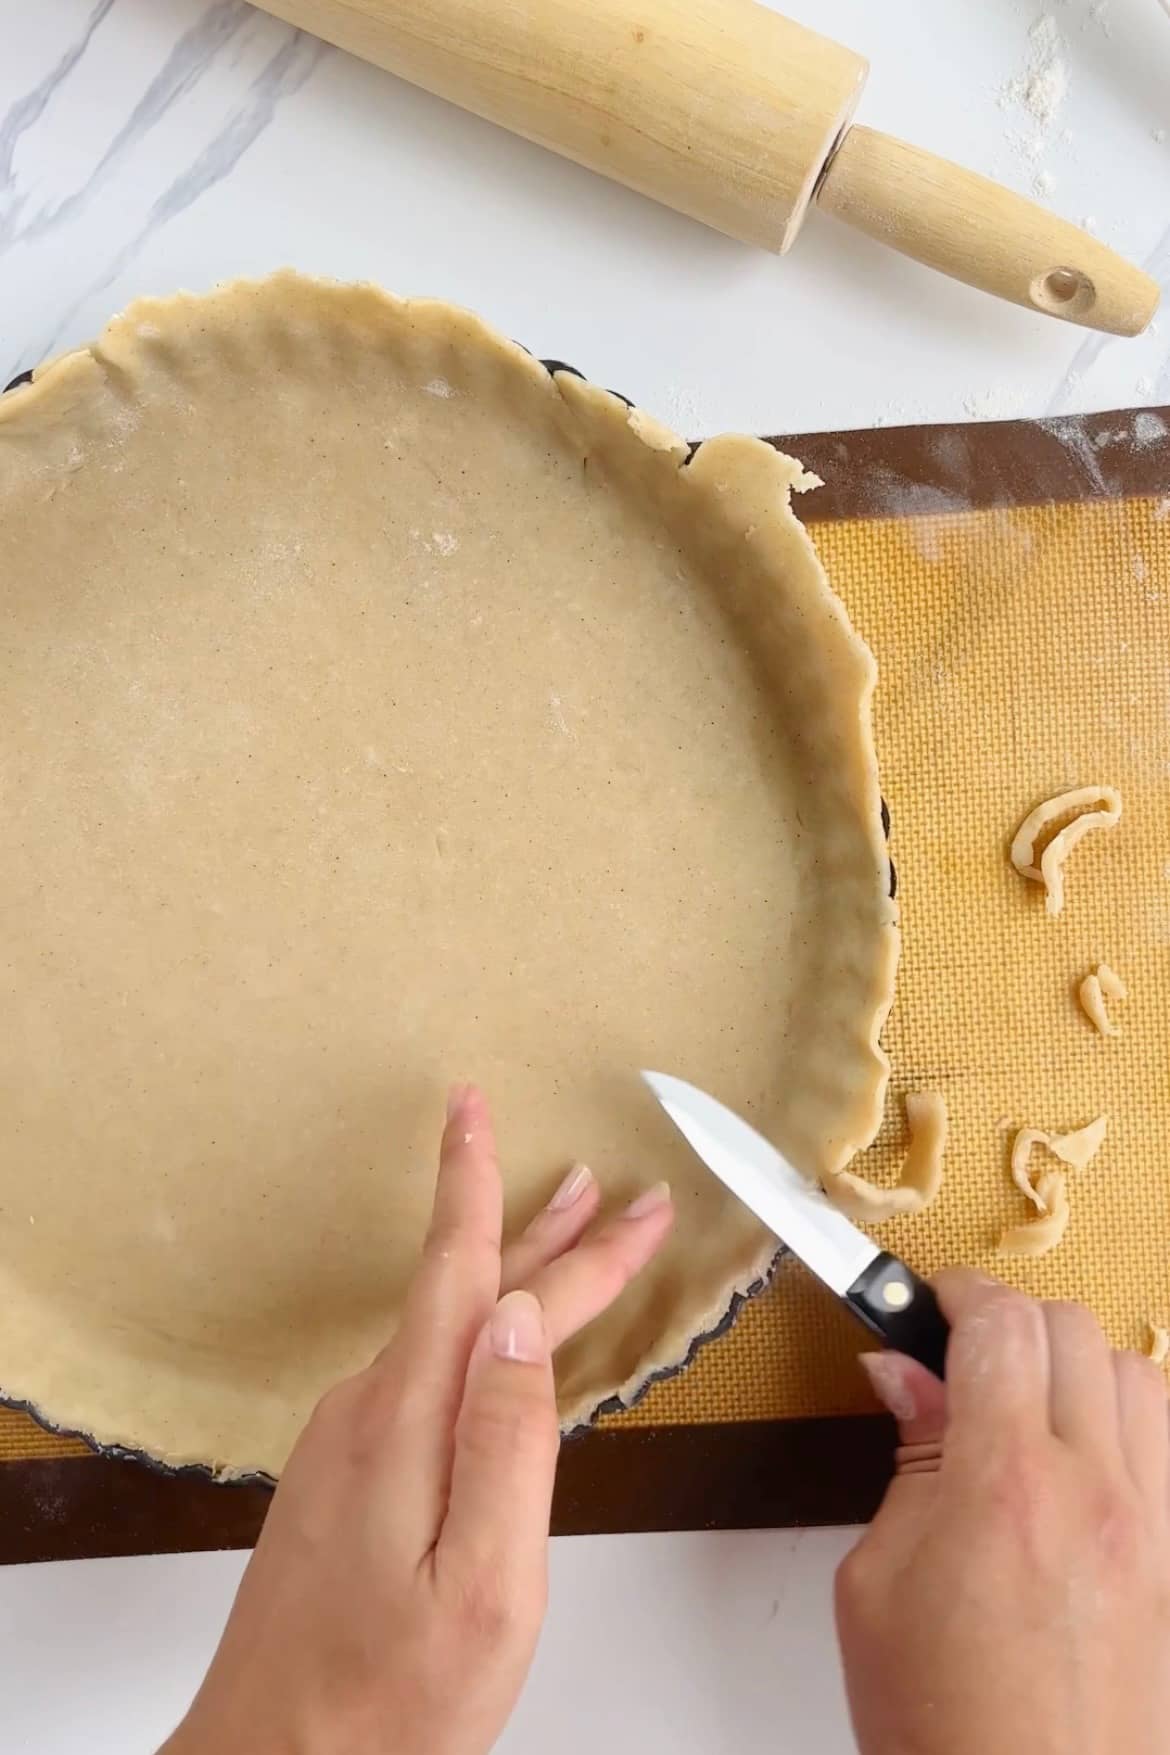 Lining the tart pan / how to make an apple rose tart.